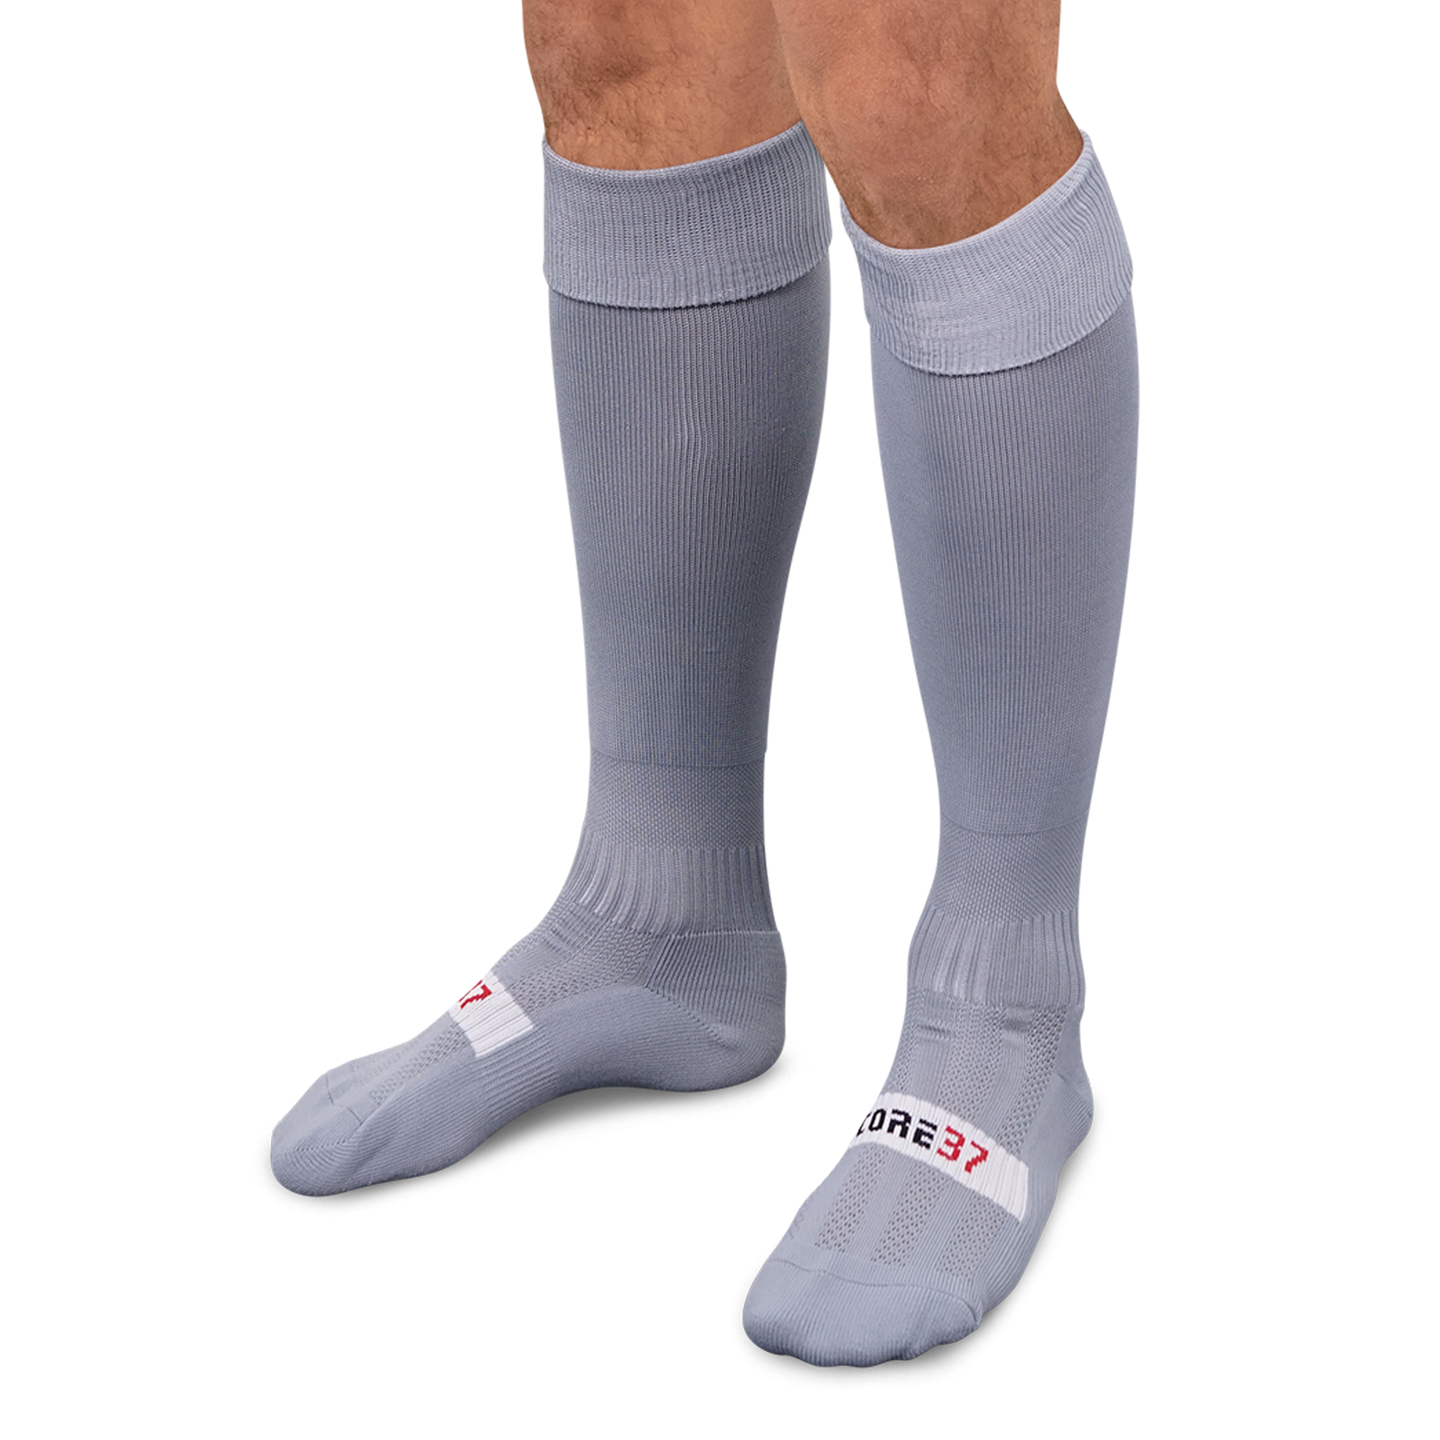 Essential Socks - Grey